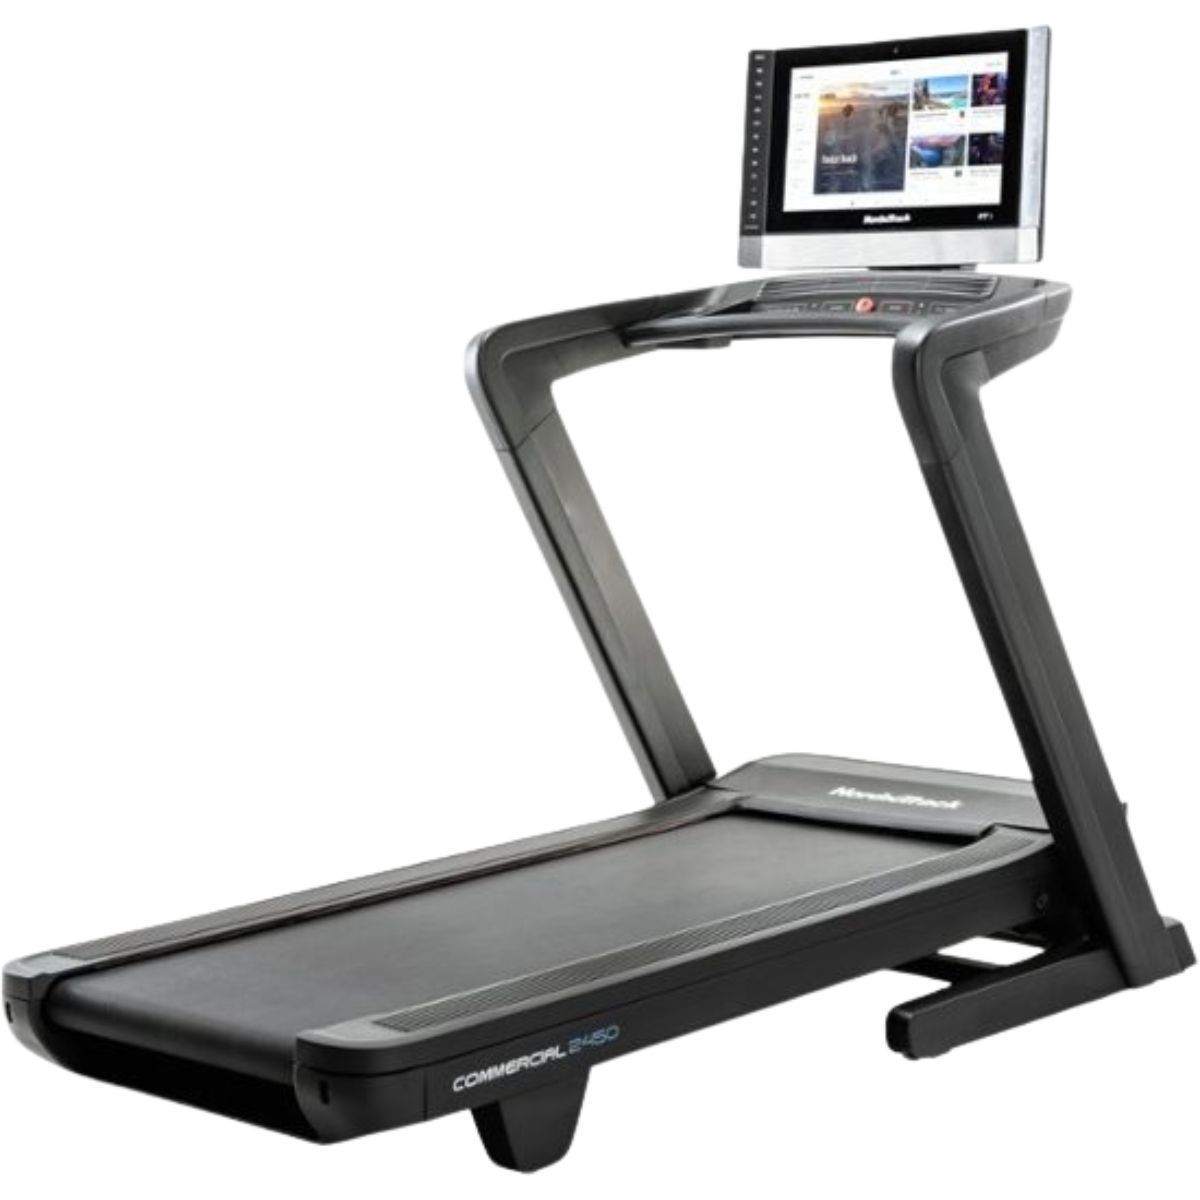 Commercial 2450 Treadmill